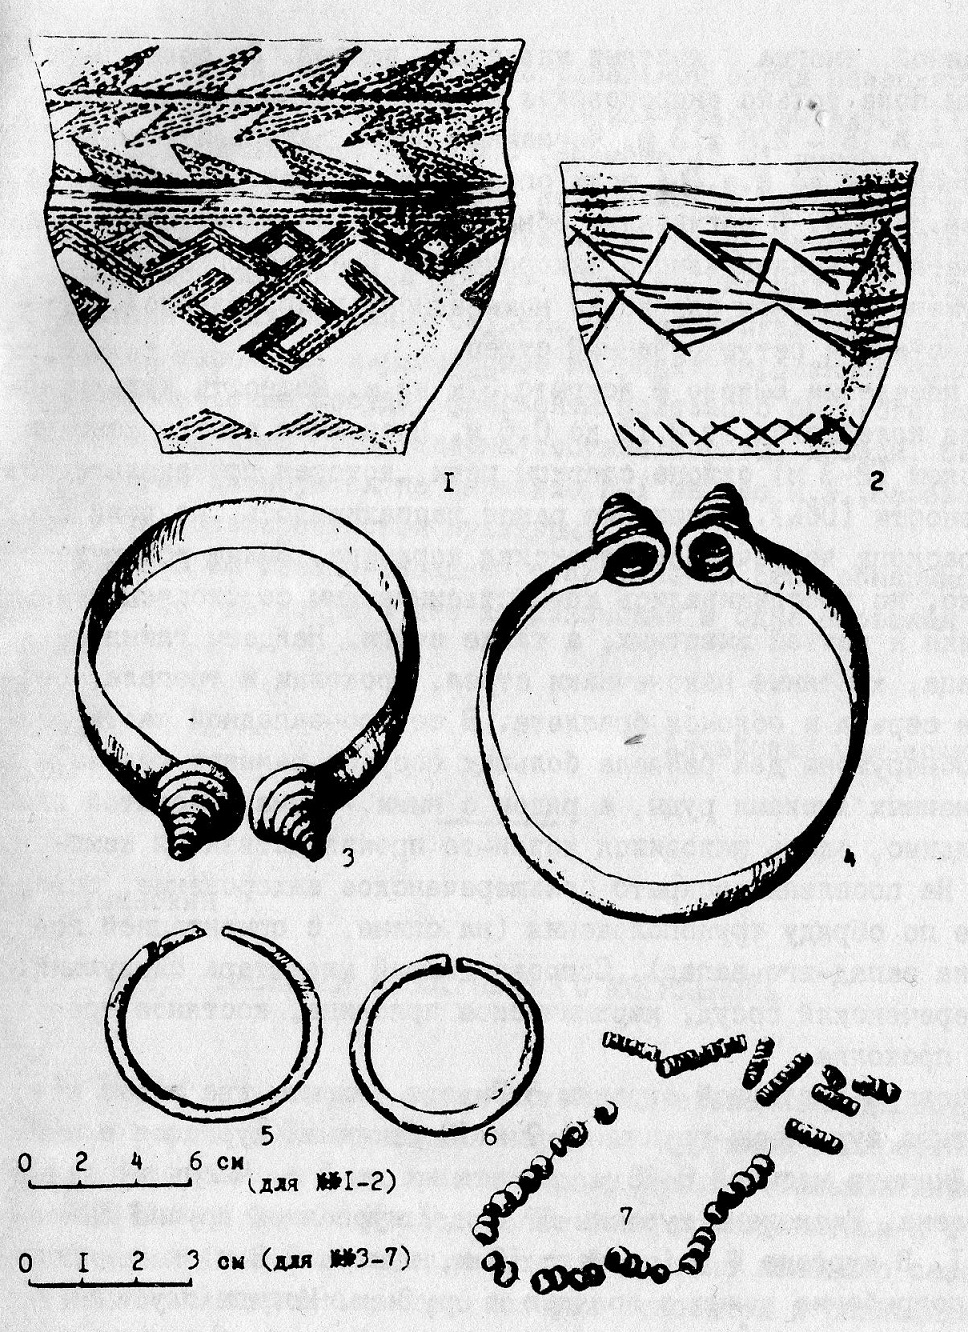 Керамика (1,2, могила № 9), бронзовые (3, 4, 7, могила № 8) и золотые вещи (5, б, могила № 8) из Быковского грунтового могильника